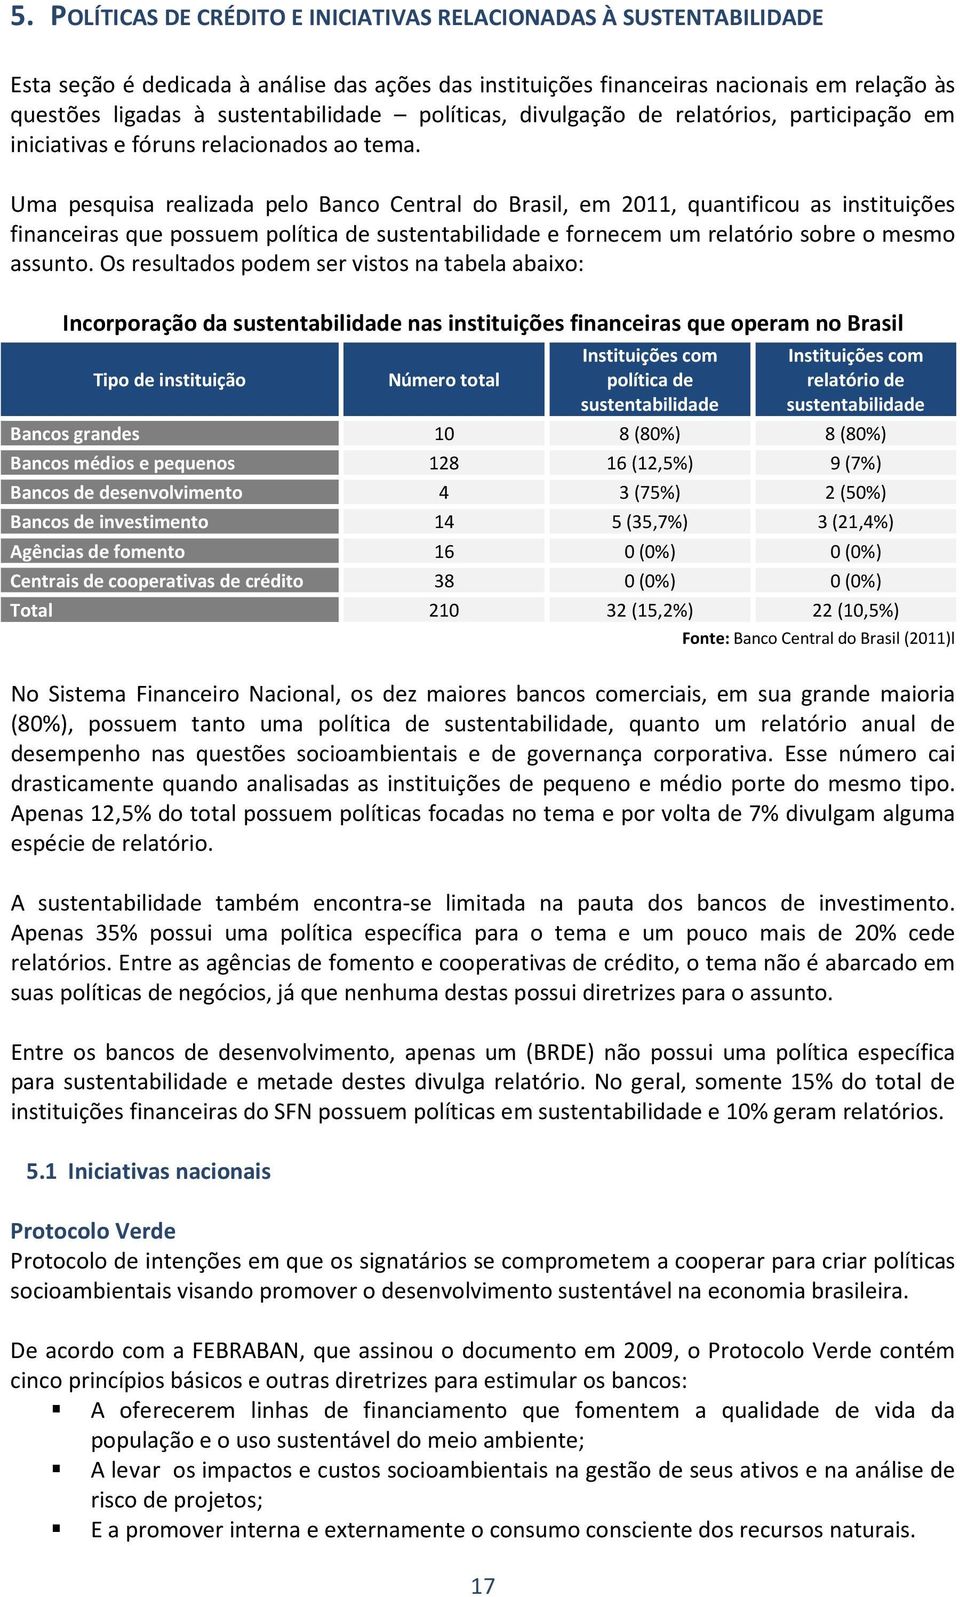 Uma pesquisa realizada pelo Banco Central do Brasil, em 2011, quantificou as instituições financeiras que possuem política de sustentabilidade e fornecem um relatório sobre o mesmo assunto.